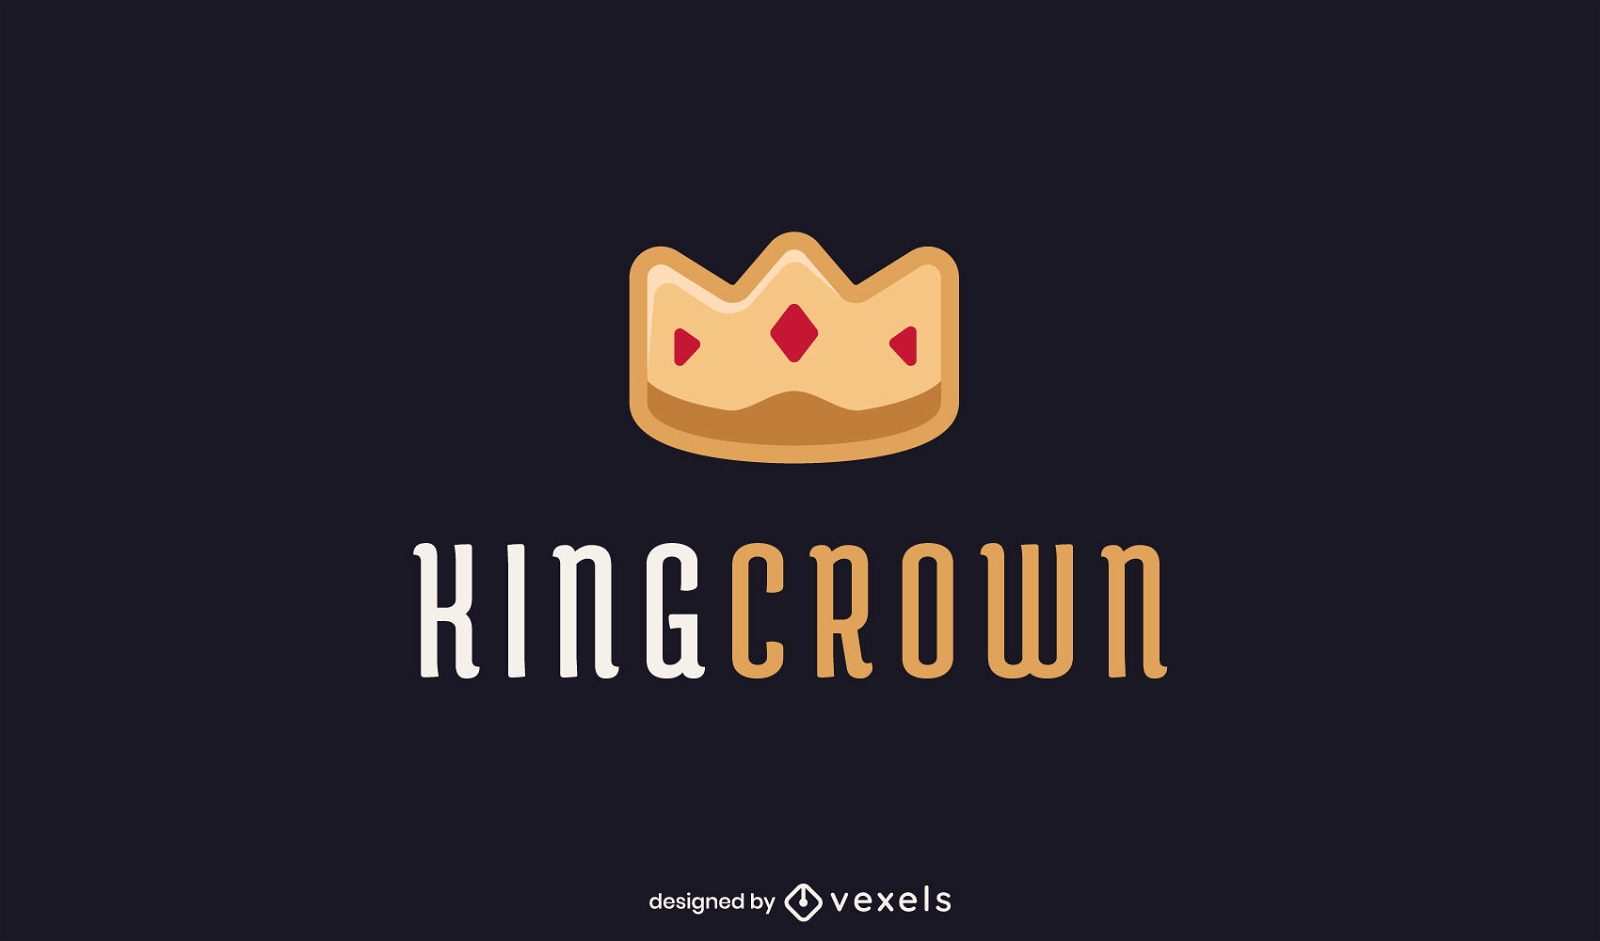 Goldene Krone K?nig Royalty Logo Vorlage